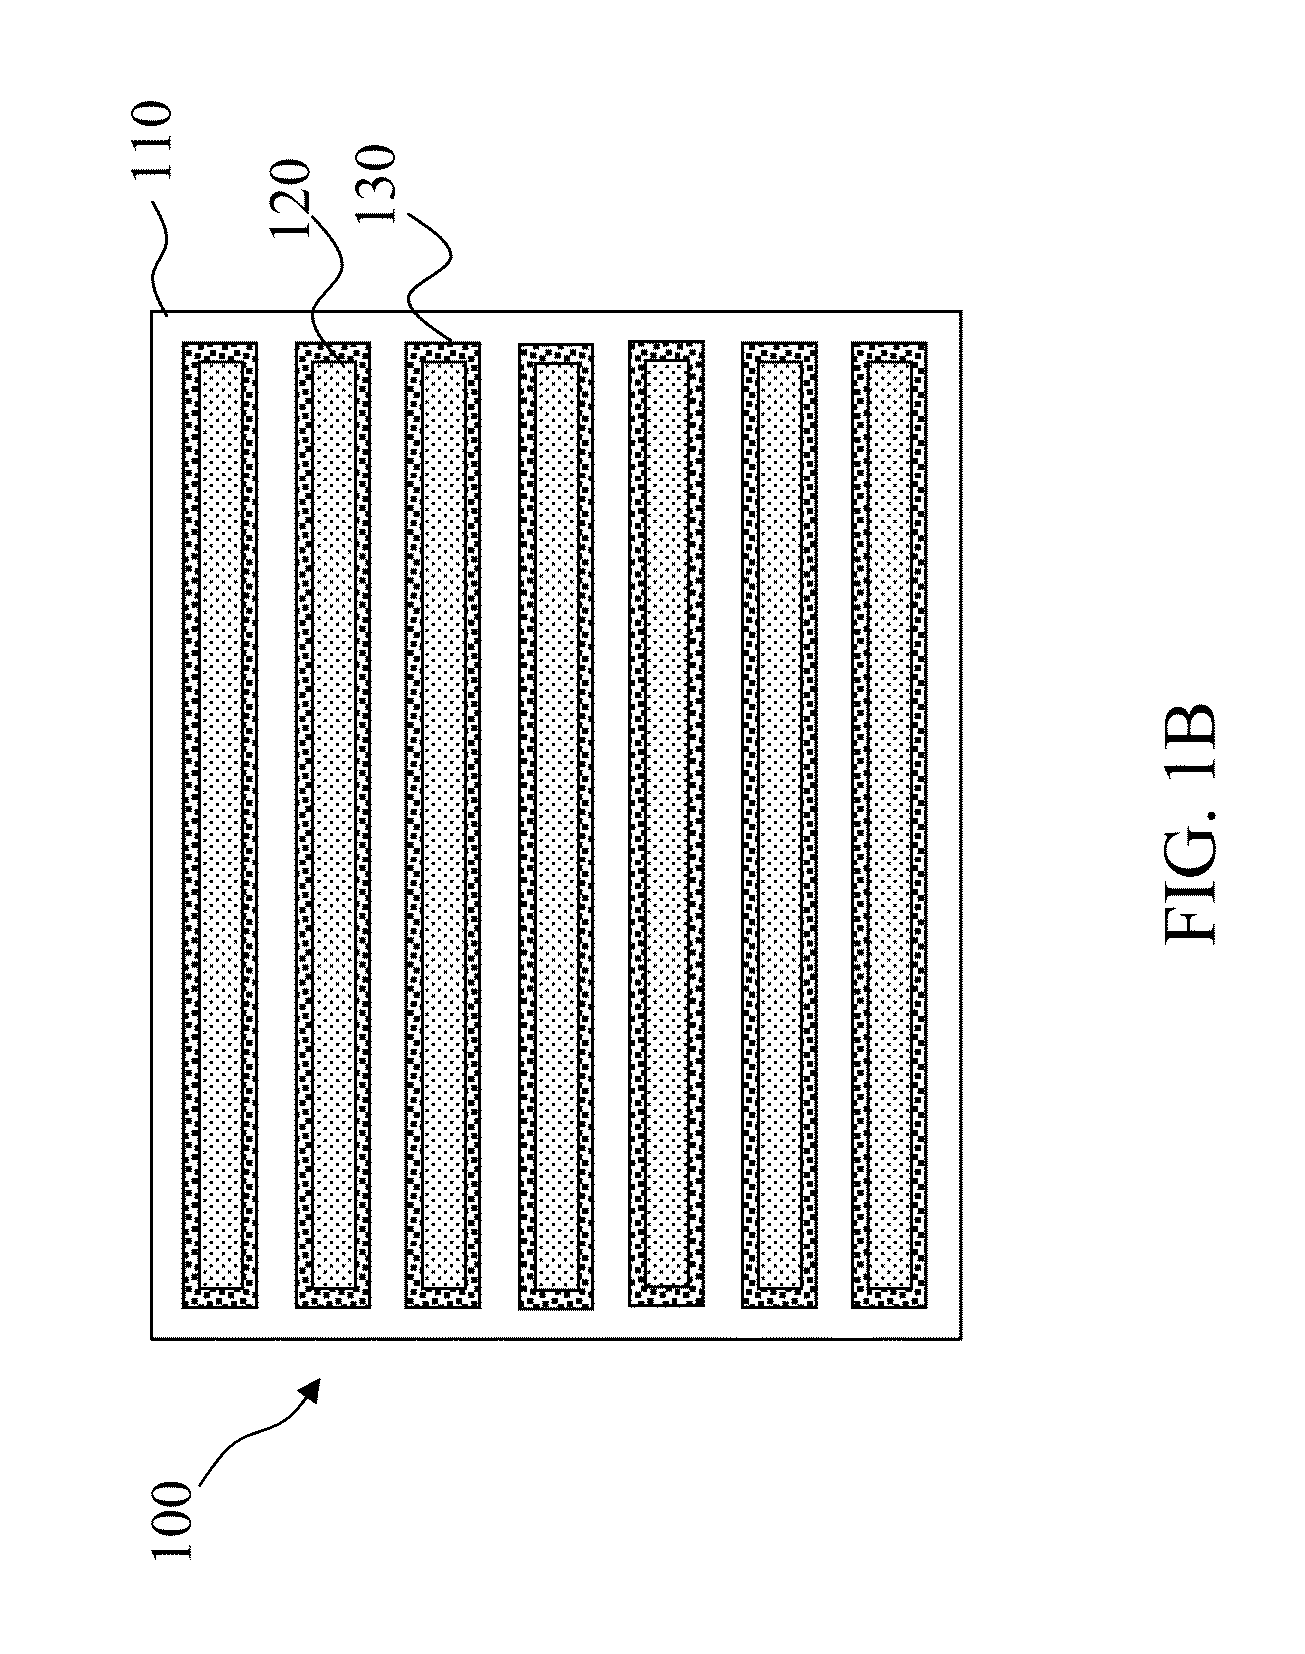 Cut-mask patterning process for fin-like field effect transistor (FinFET) device